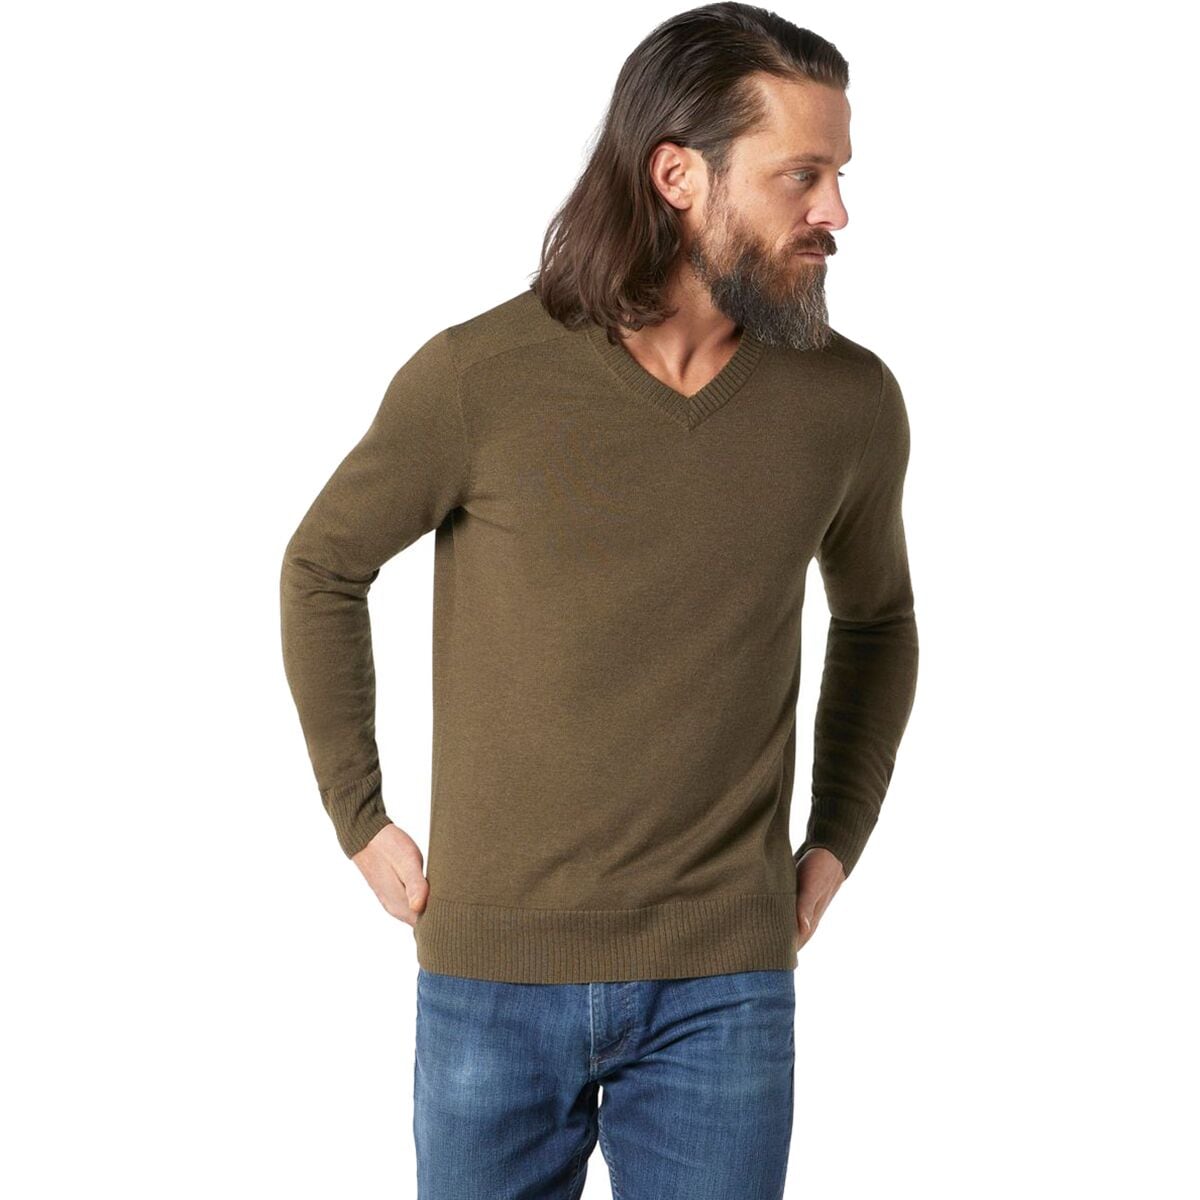 Sparwood V-Neck Sweater - Men